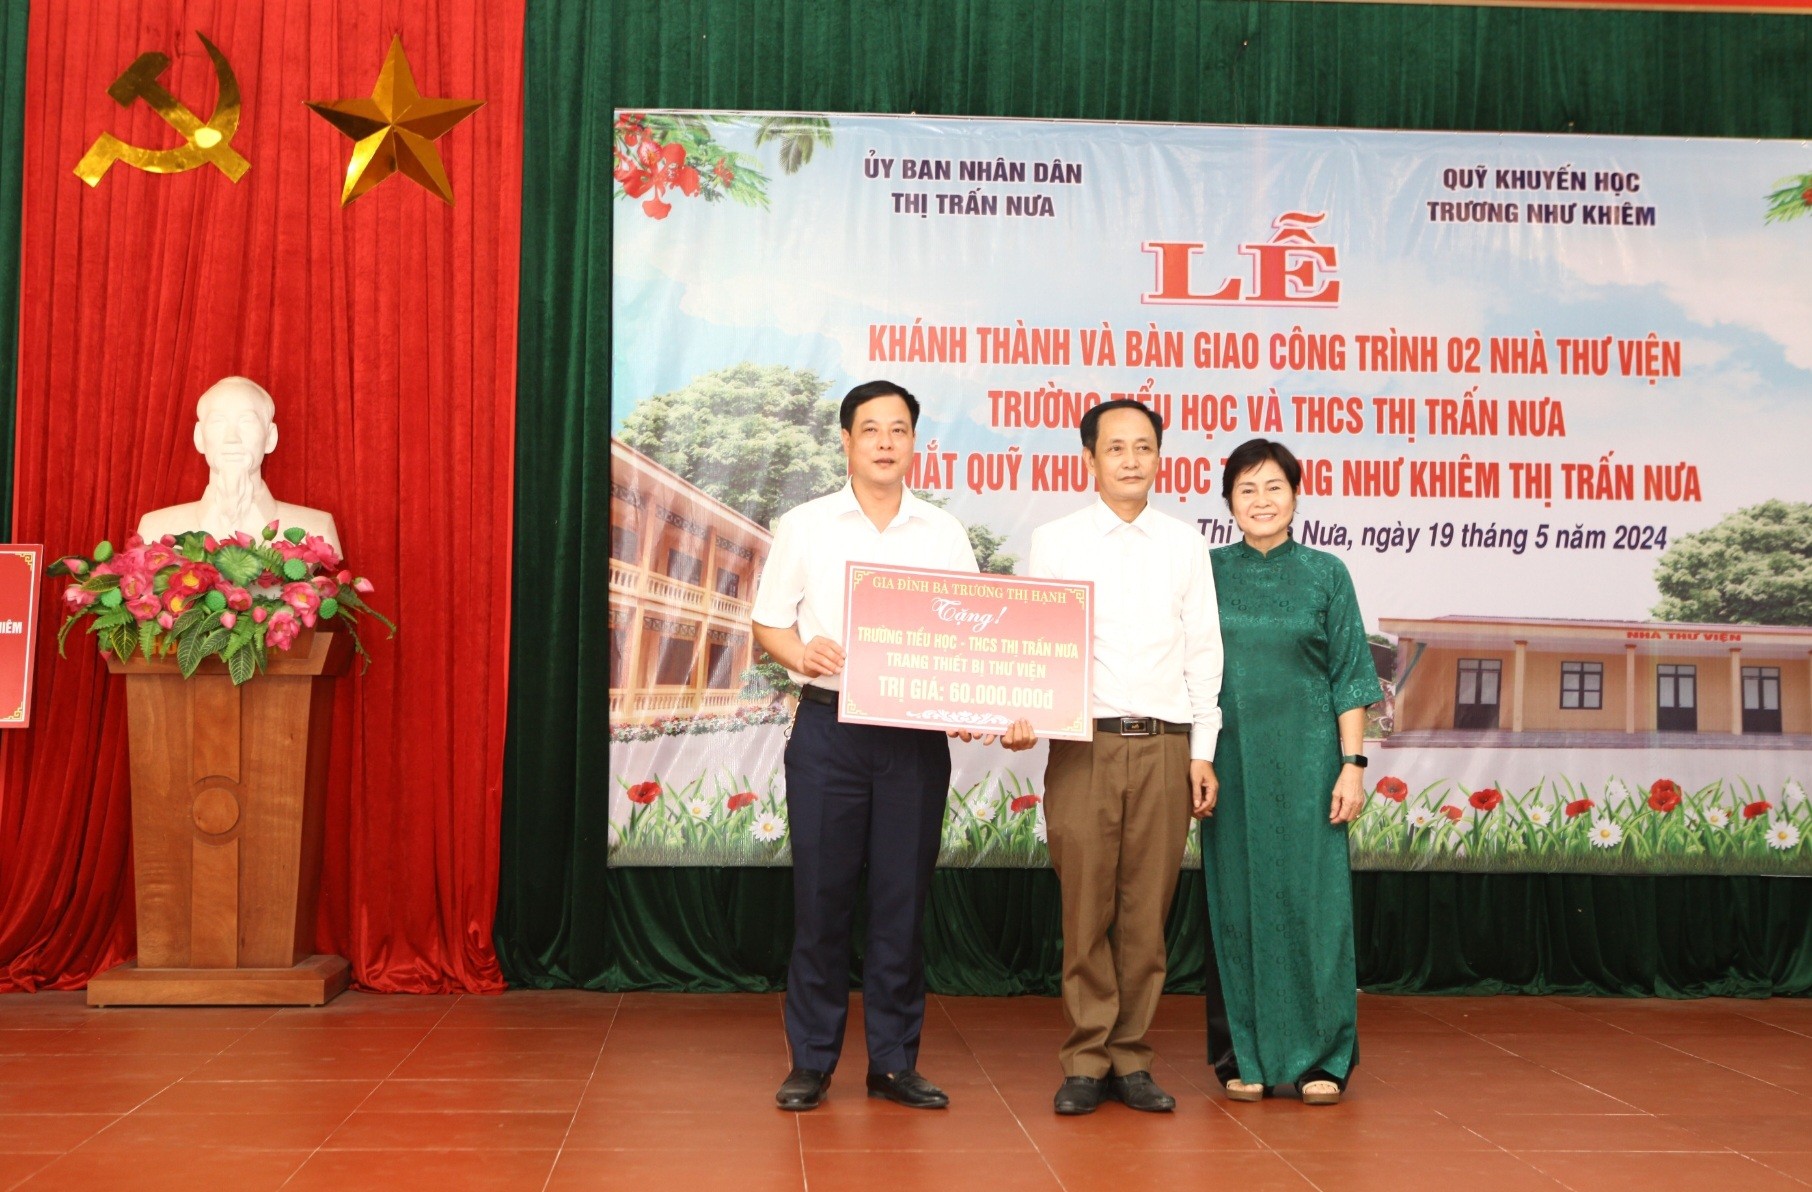 Triệu Sơn (Thanh Hóa): Khánh thành Nhà Thư viện và ra mắt Quỹ Khuyến học Trương Như Khiêm